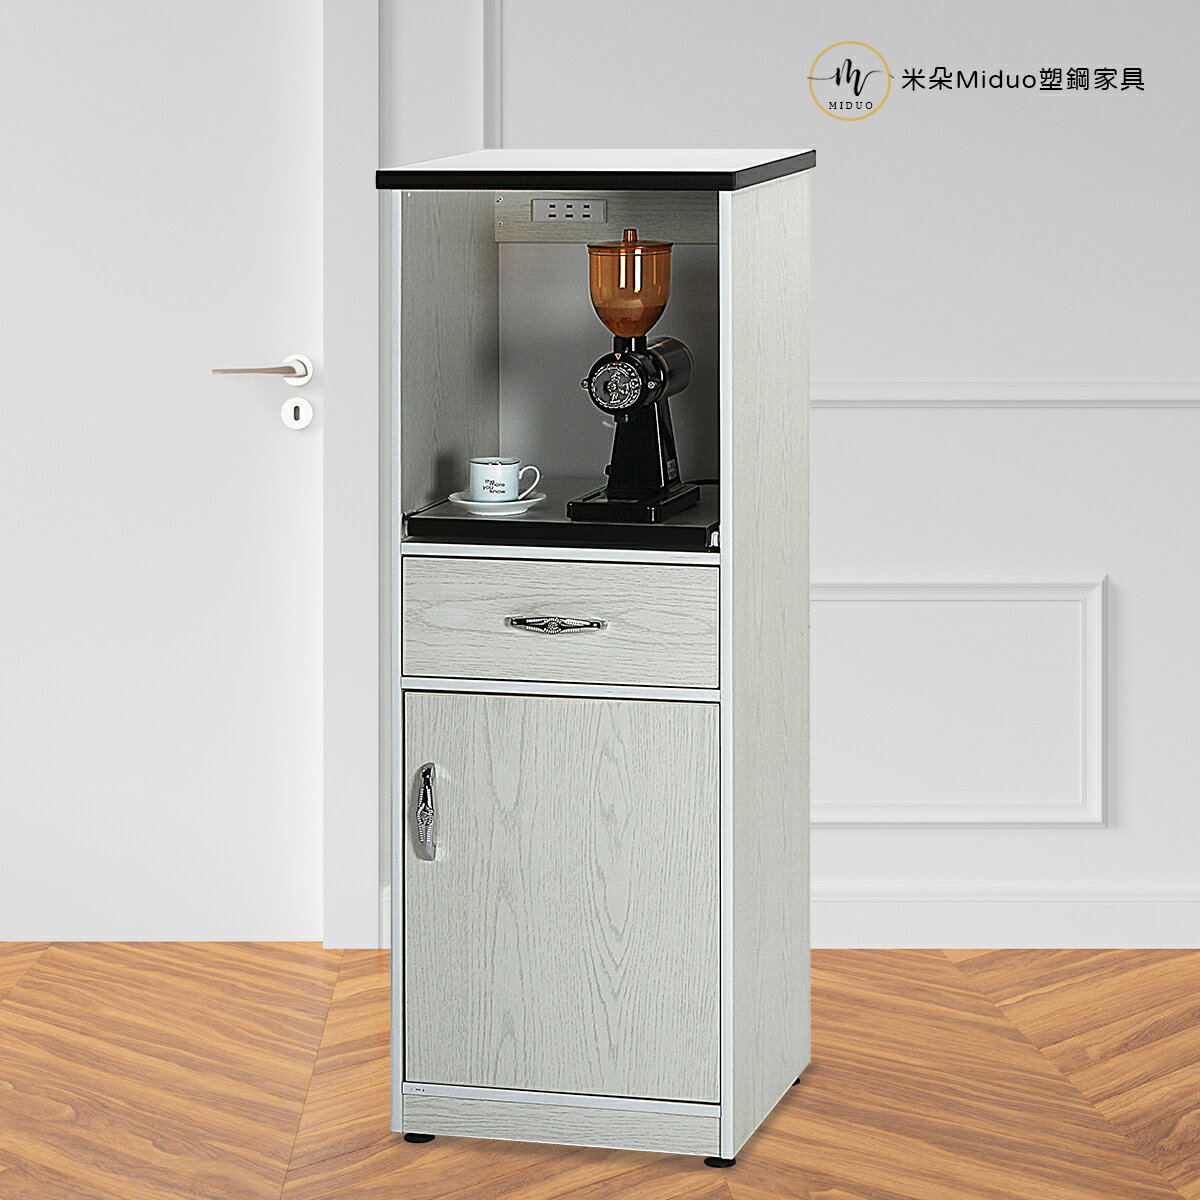 1.5尺單門一抽一拉盤塑鋼電器櫃 塑鋼家具 櫥櫃(附插座)【米朵Miduo】